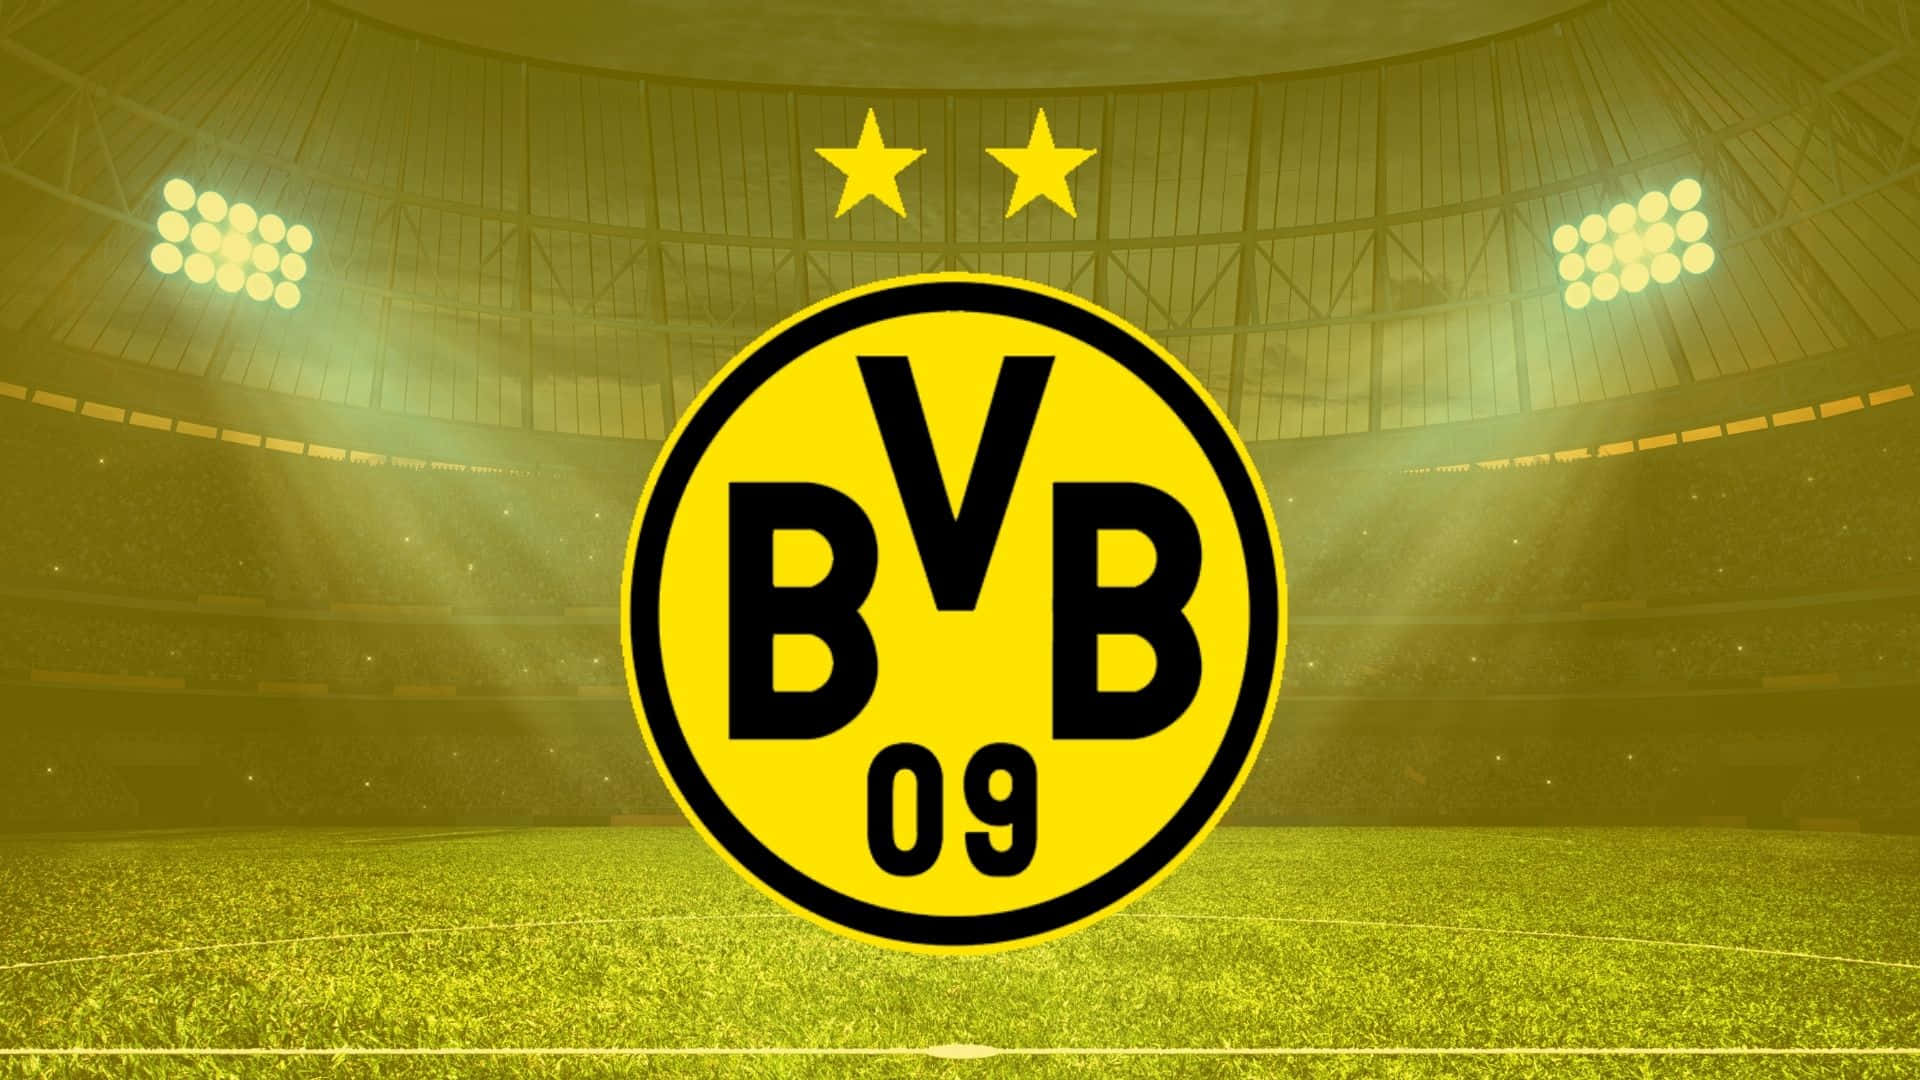 The Futbol City Of Dortmund Wallpaper